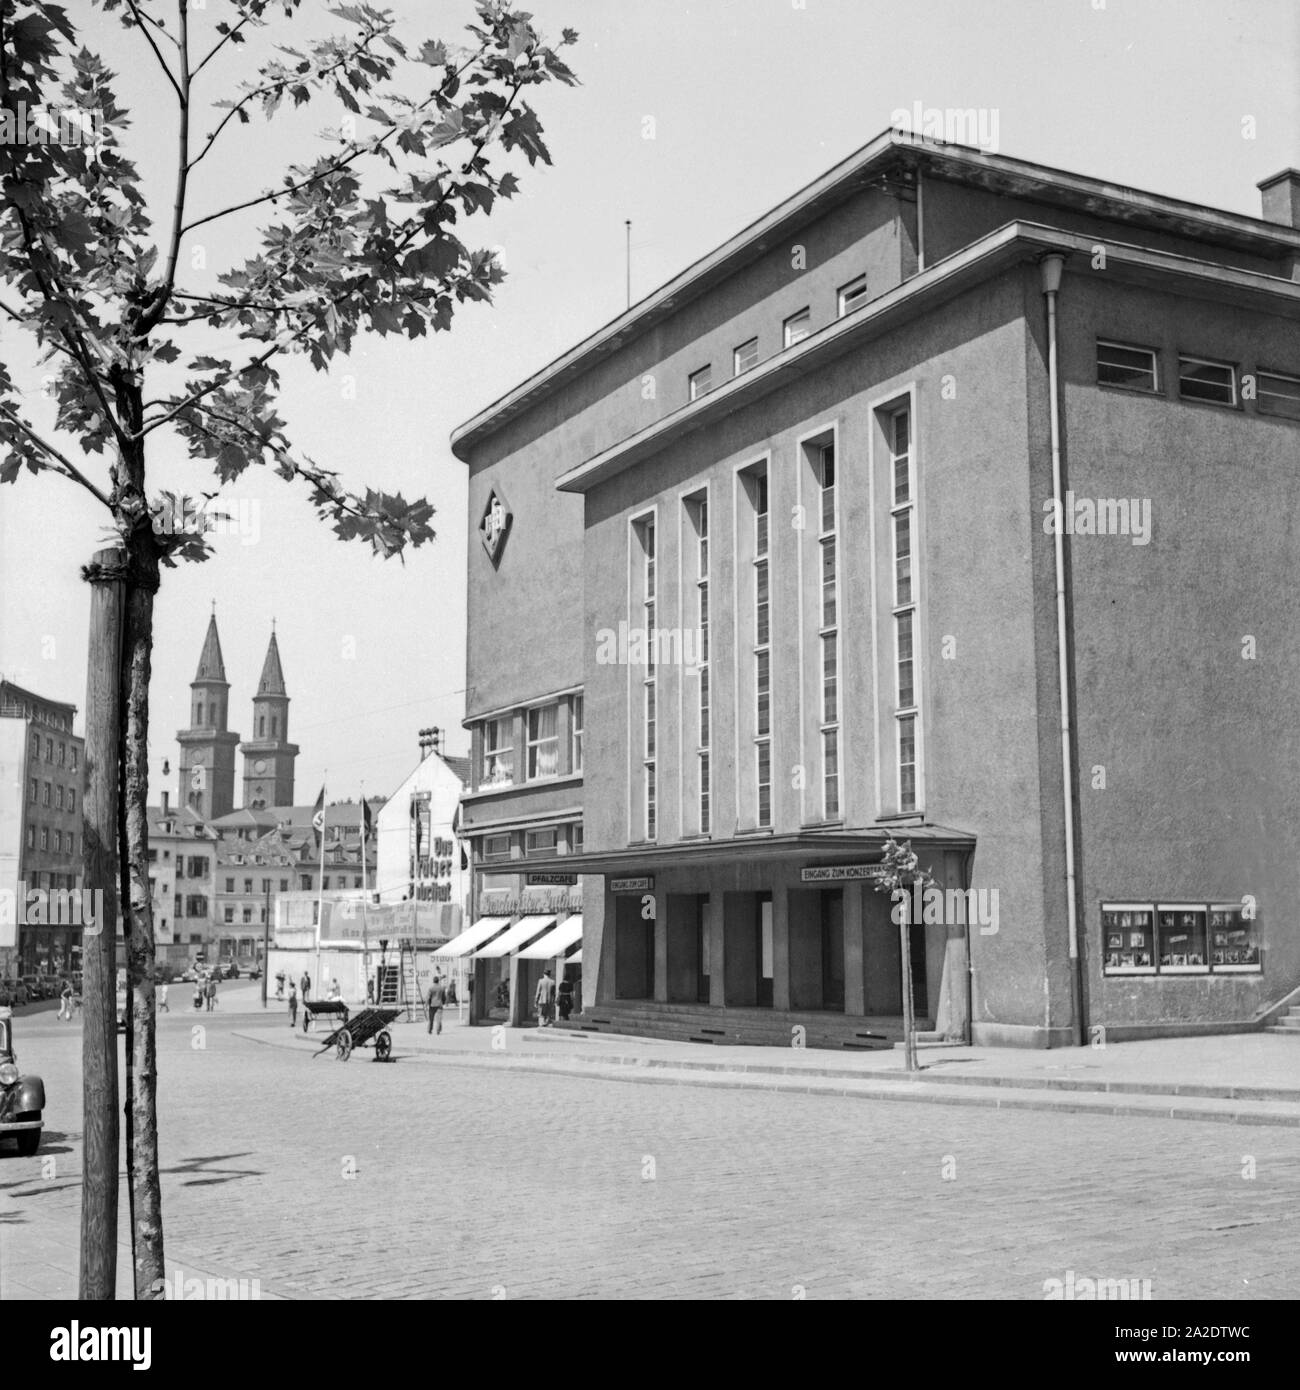 Eingangsbereich und Vorplatz am Pfalzbau in Ludwigshafen, Deutschland 1930er Jahre. Entrance and square in front of Pfalzbau hall at Ludwigshafen, Germany 1930s. Stock Photo